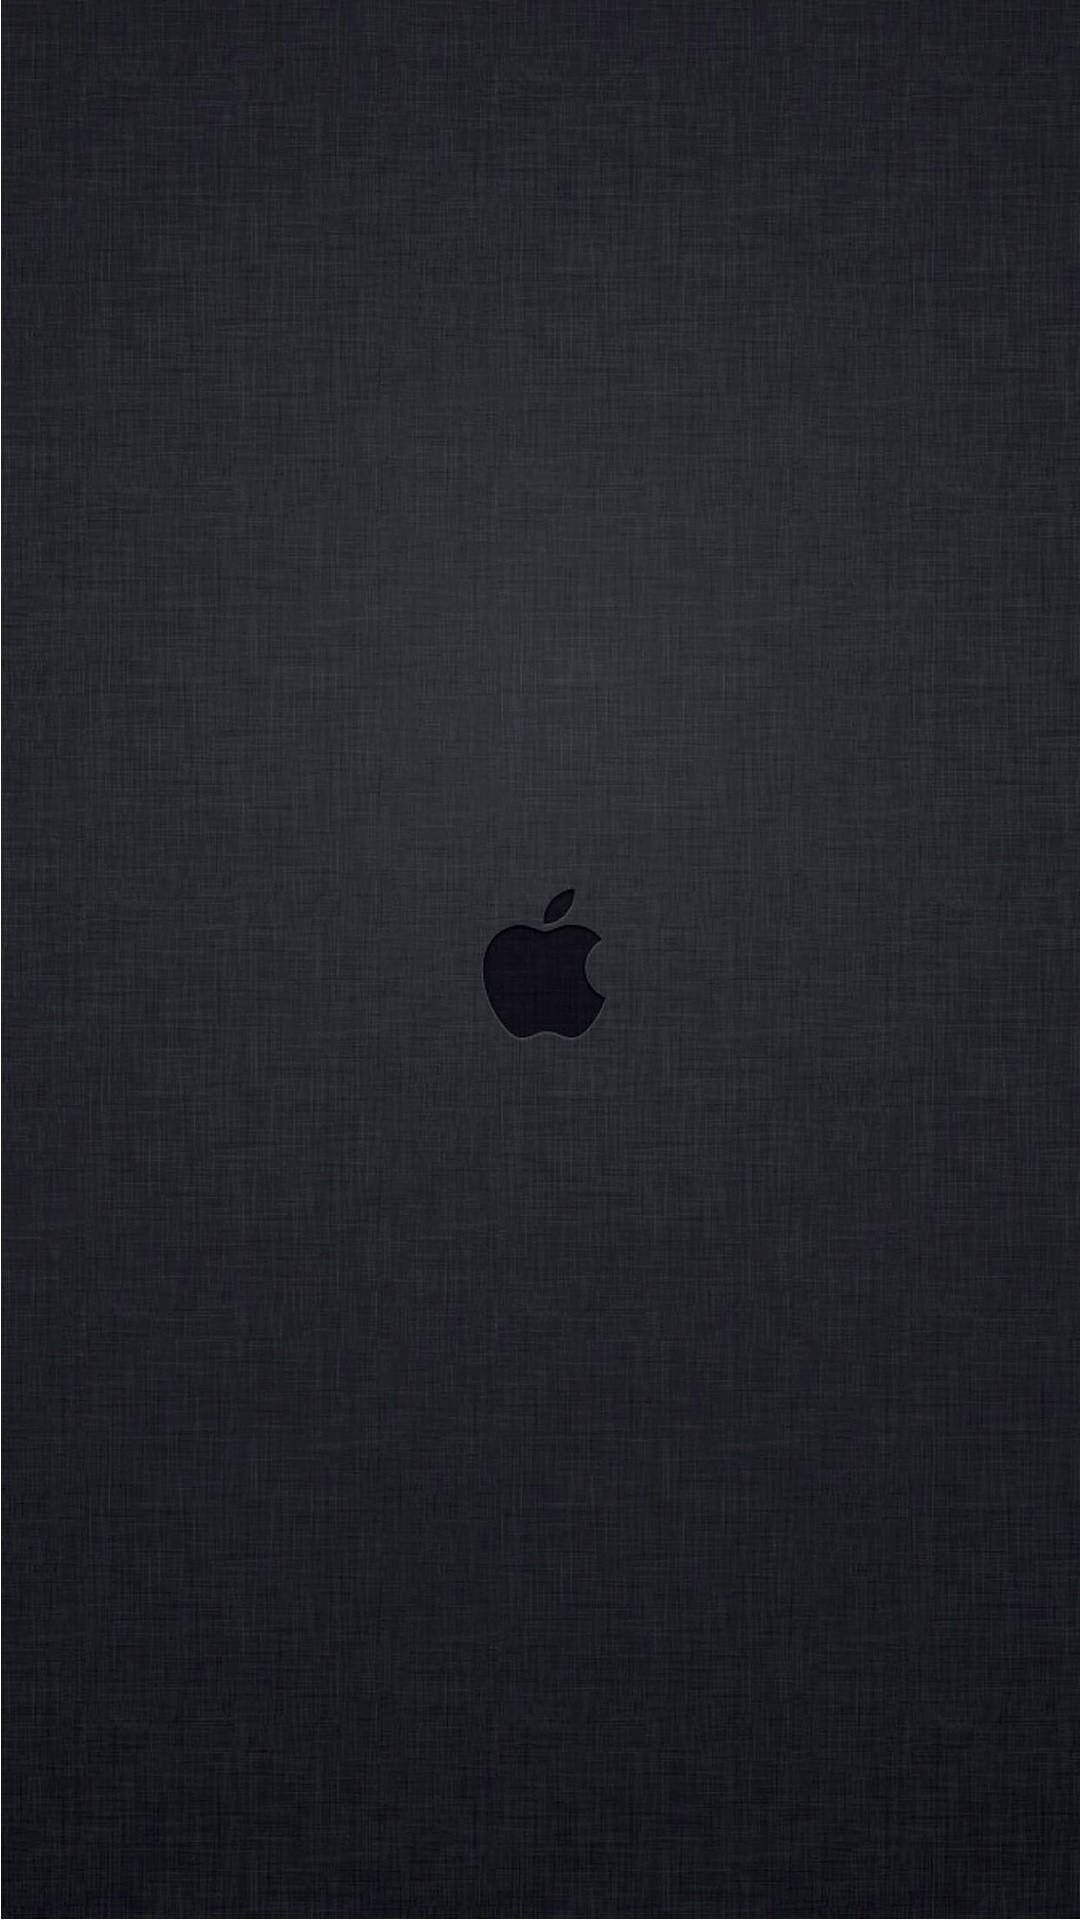 Embossed Apple Logo 4k Background